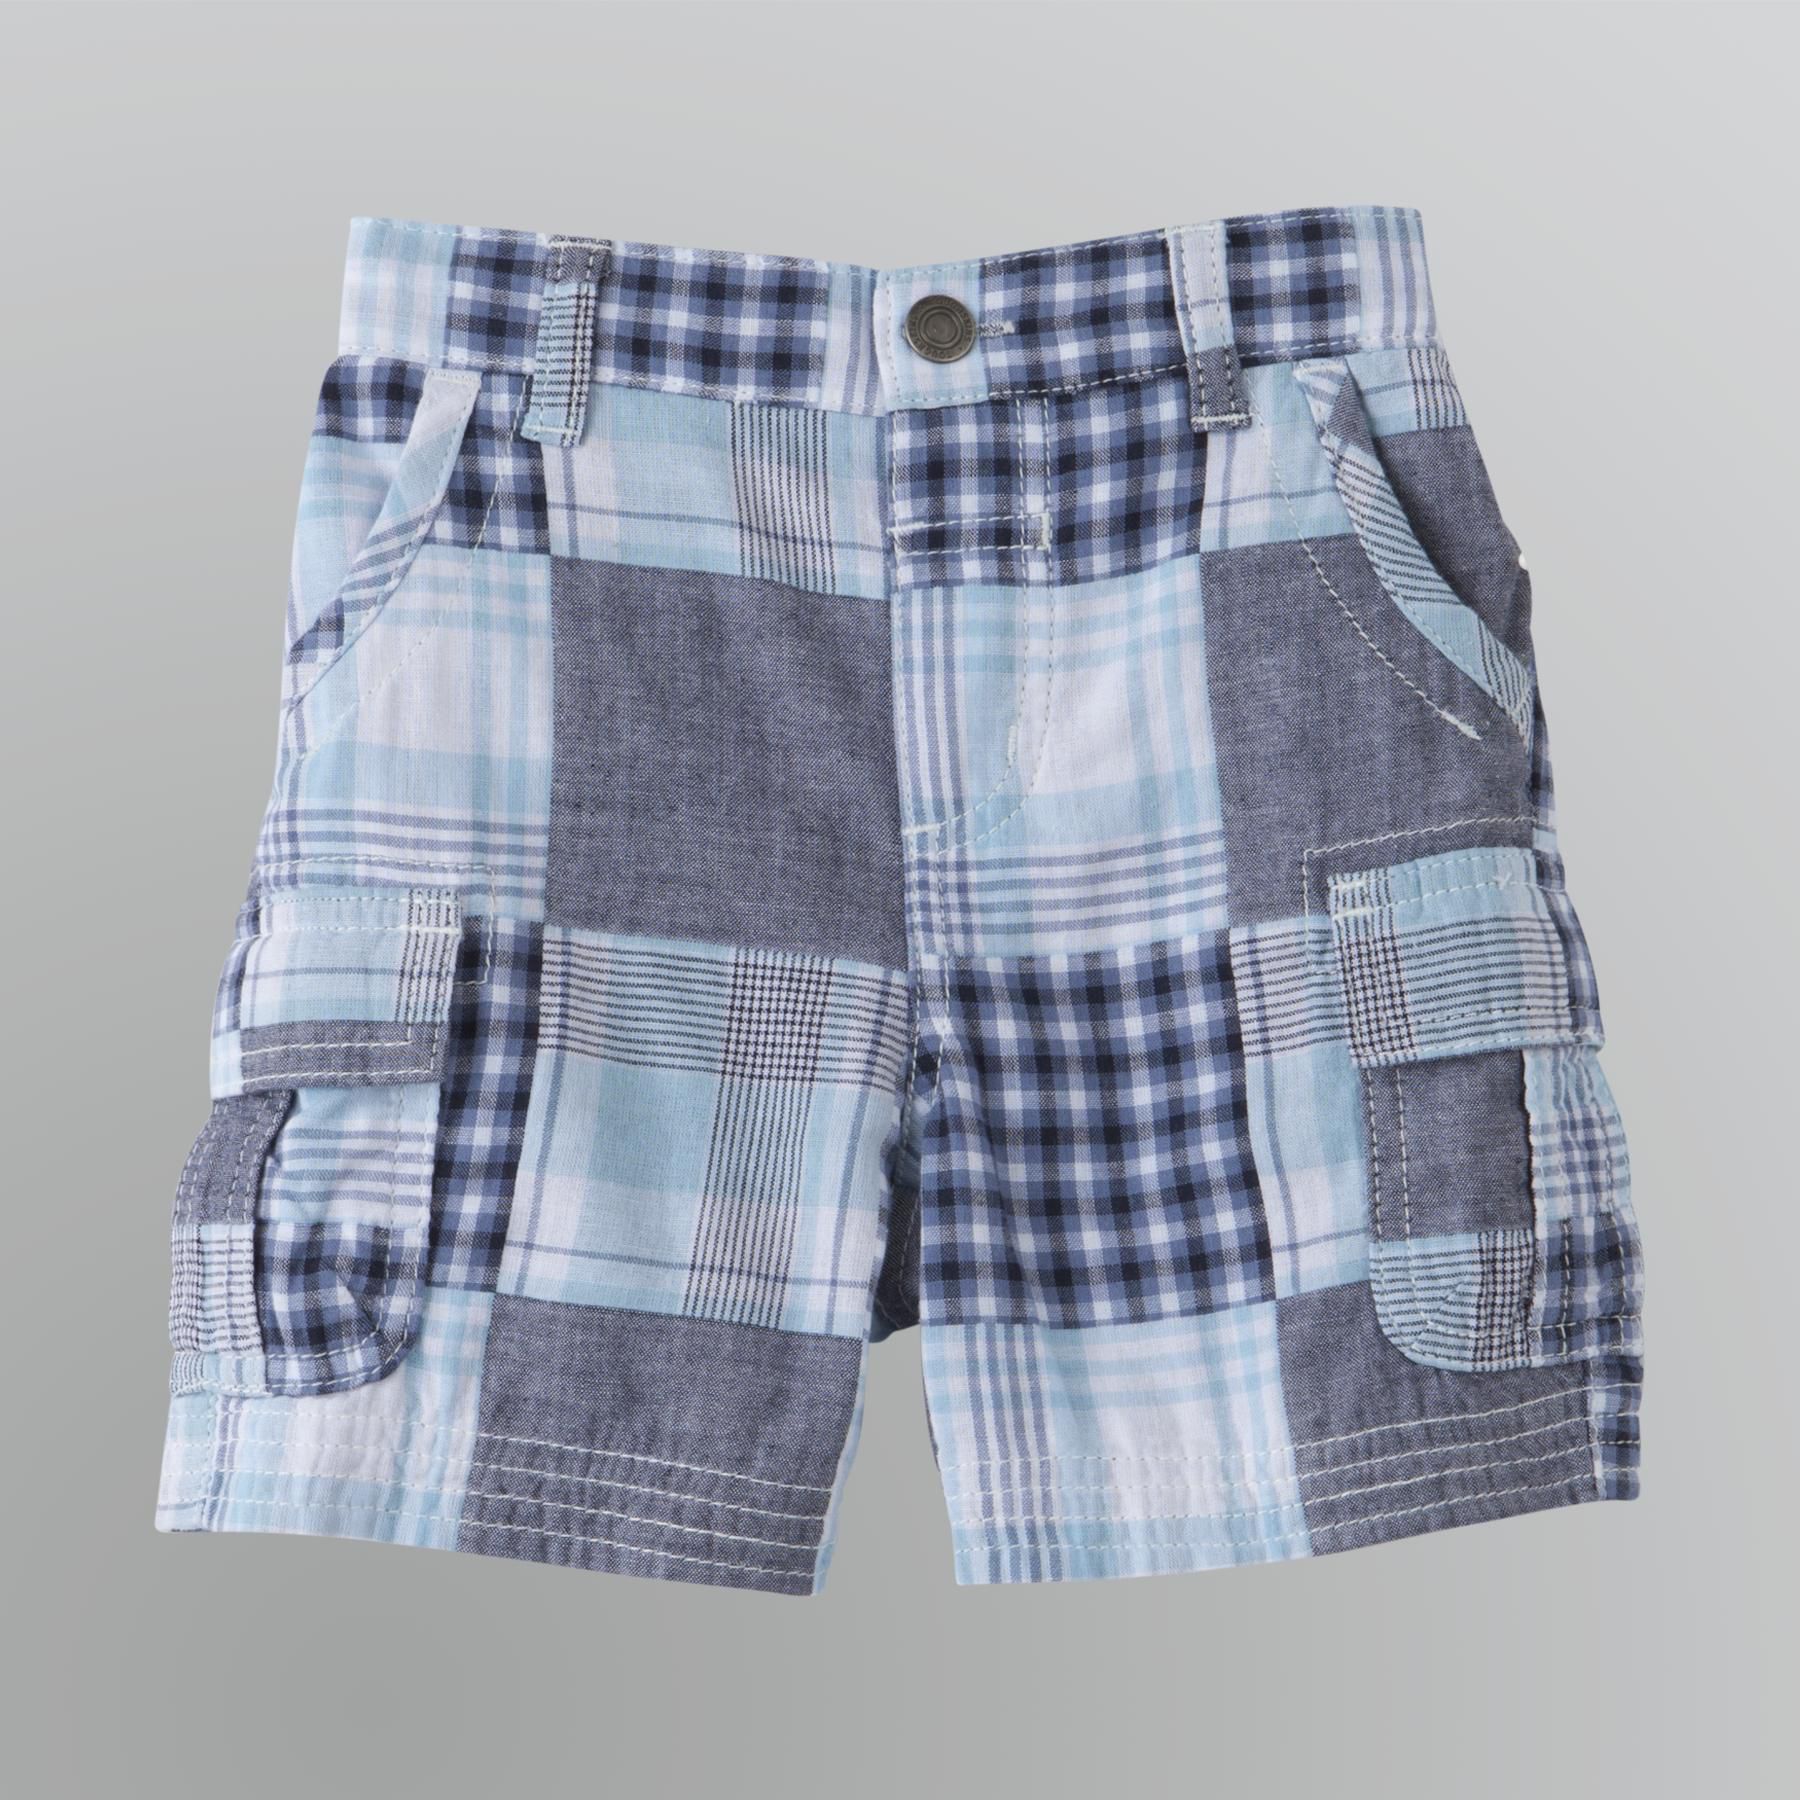 Toughskins Toddler Boy's Madras Cargo Shorts